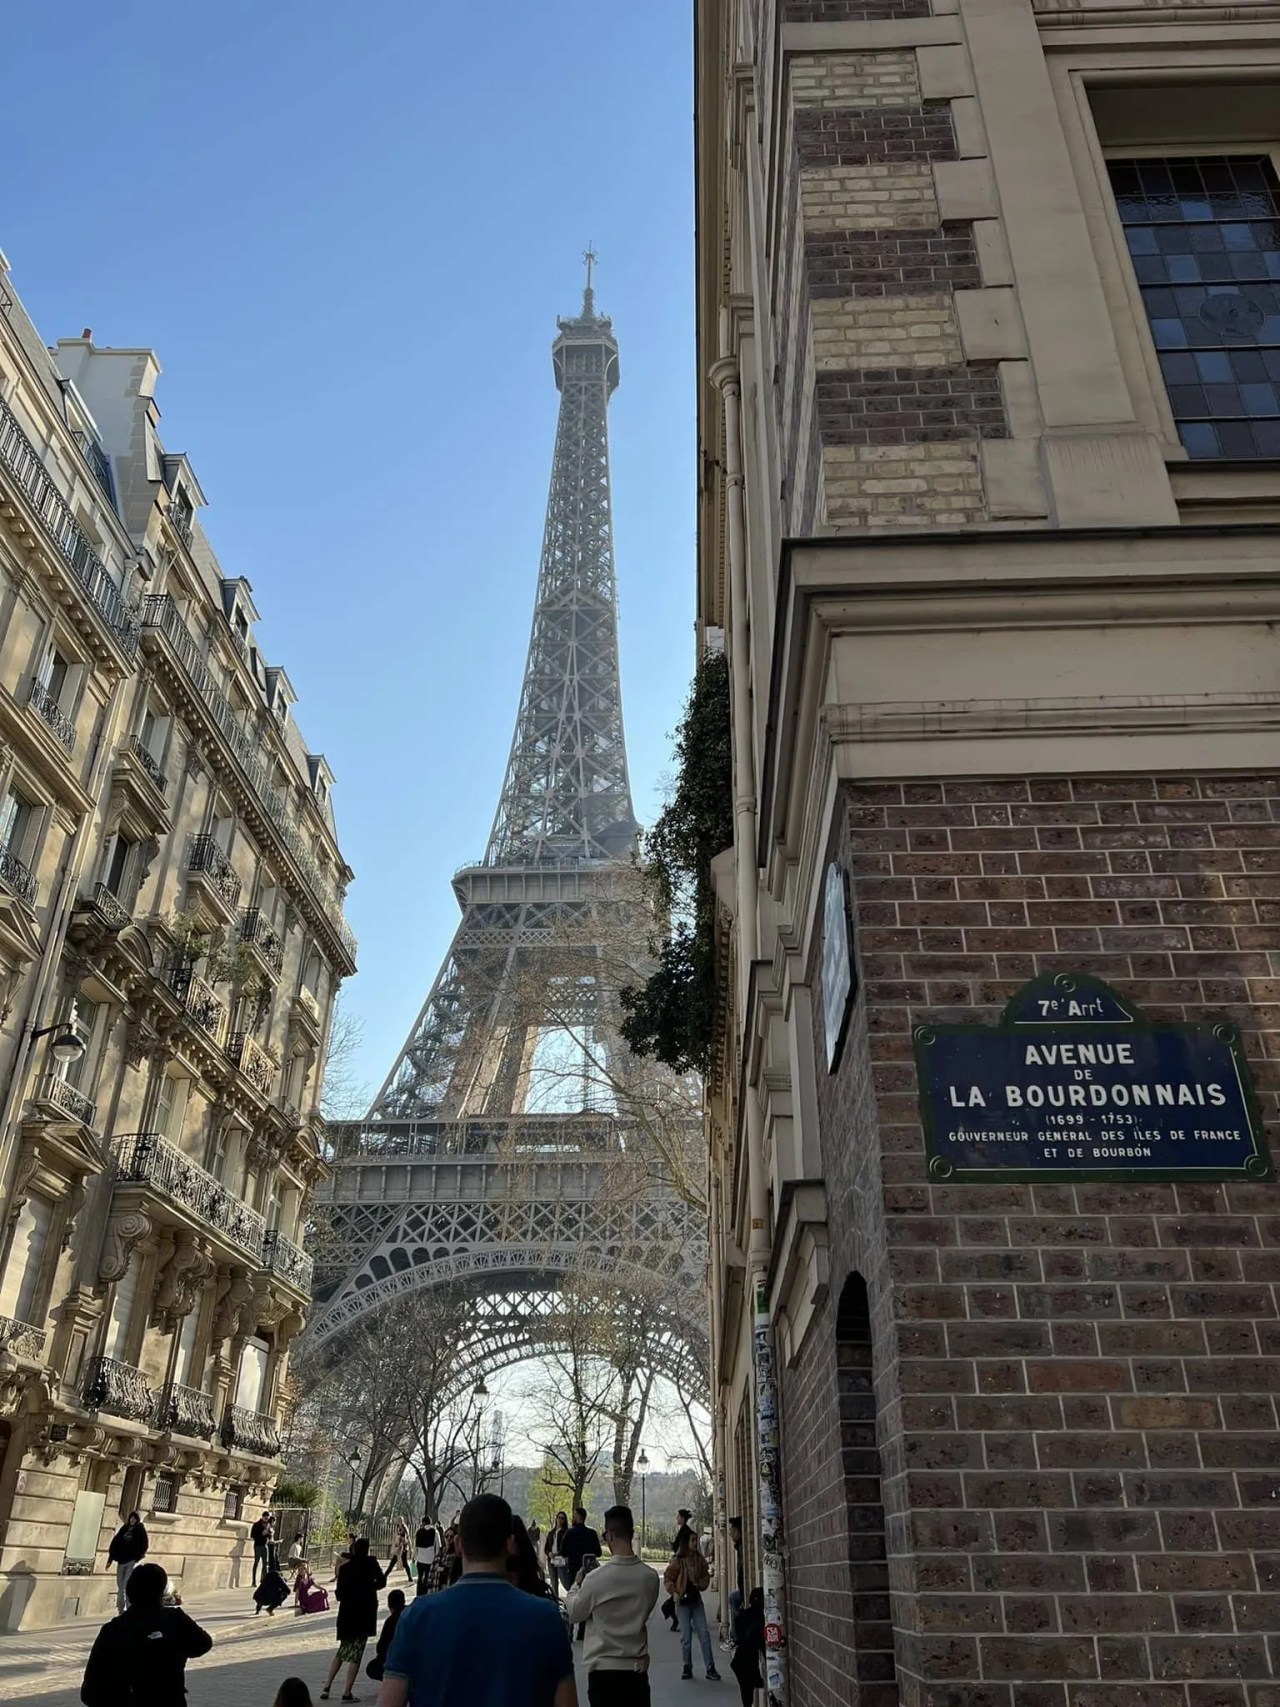 avenue la bourdonnais and the eiffel tower